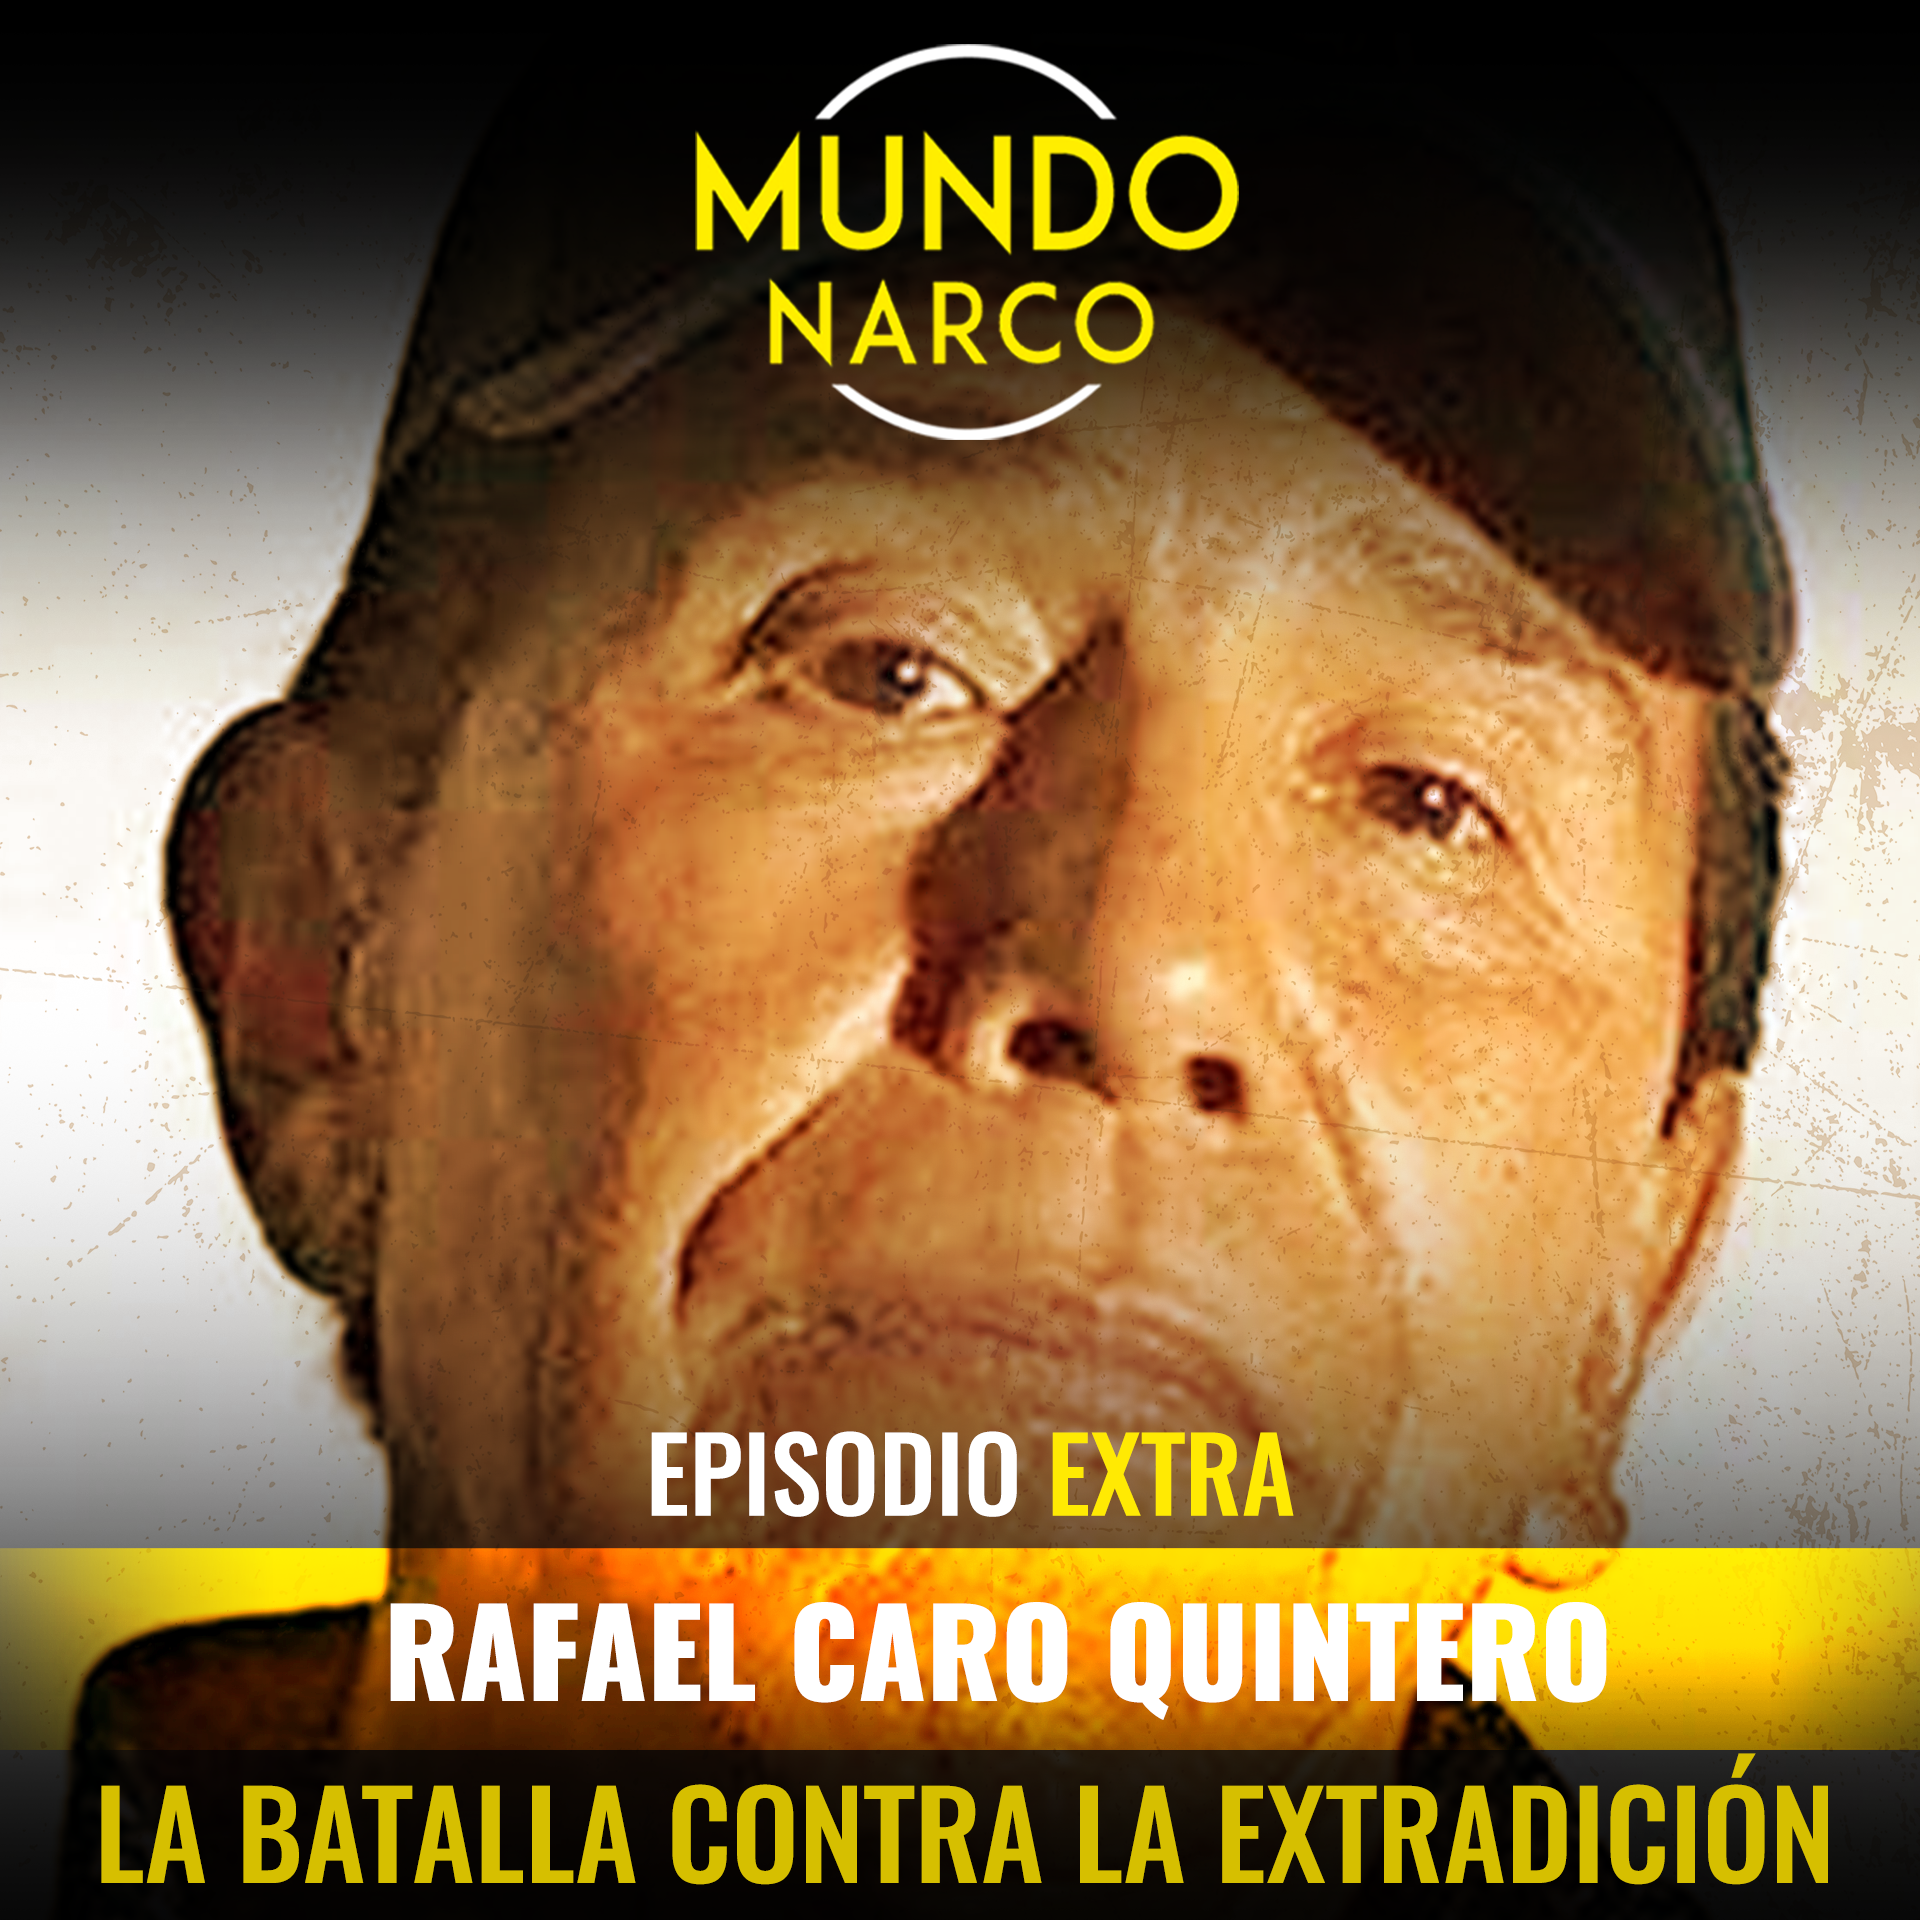 EXTRA: Rafael Caro Quintero "La Batalla Contra la Extradición"